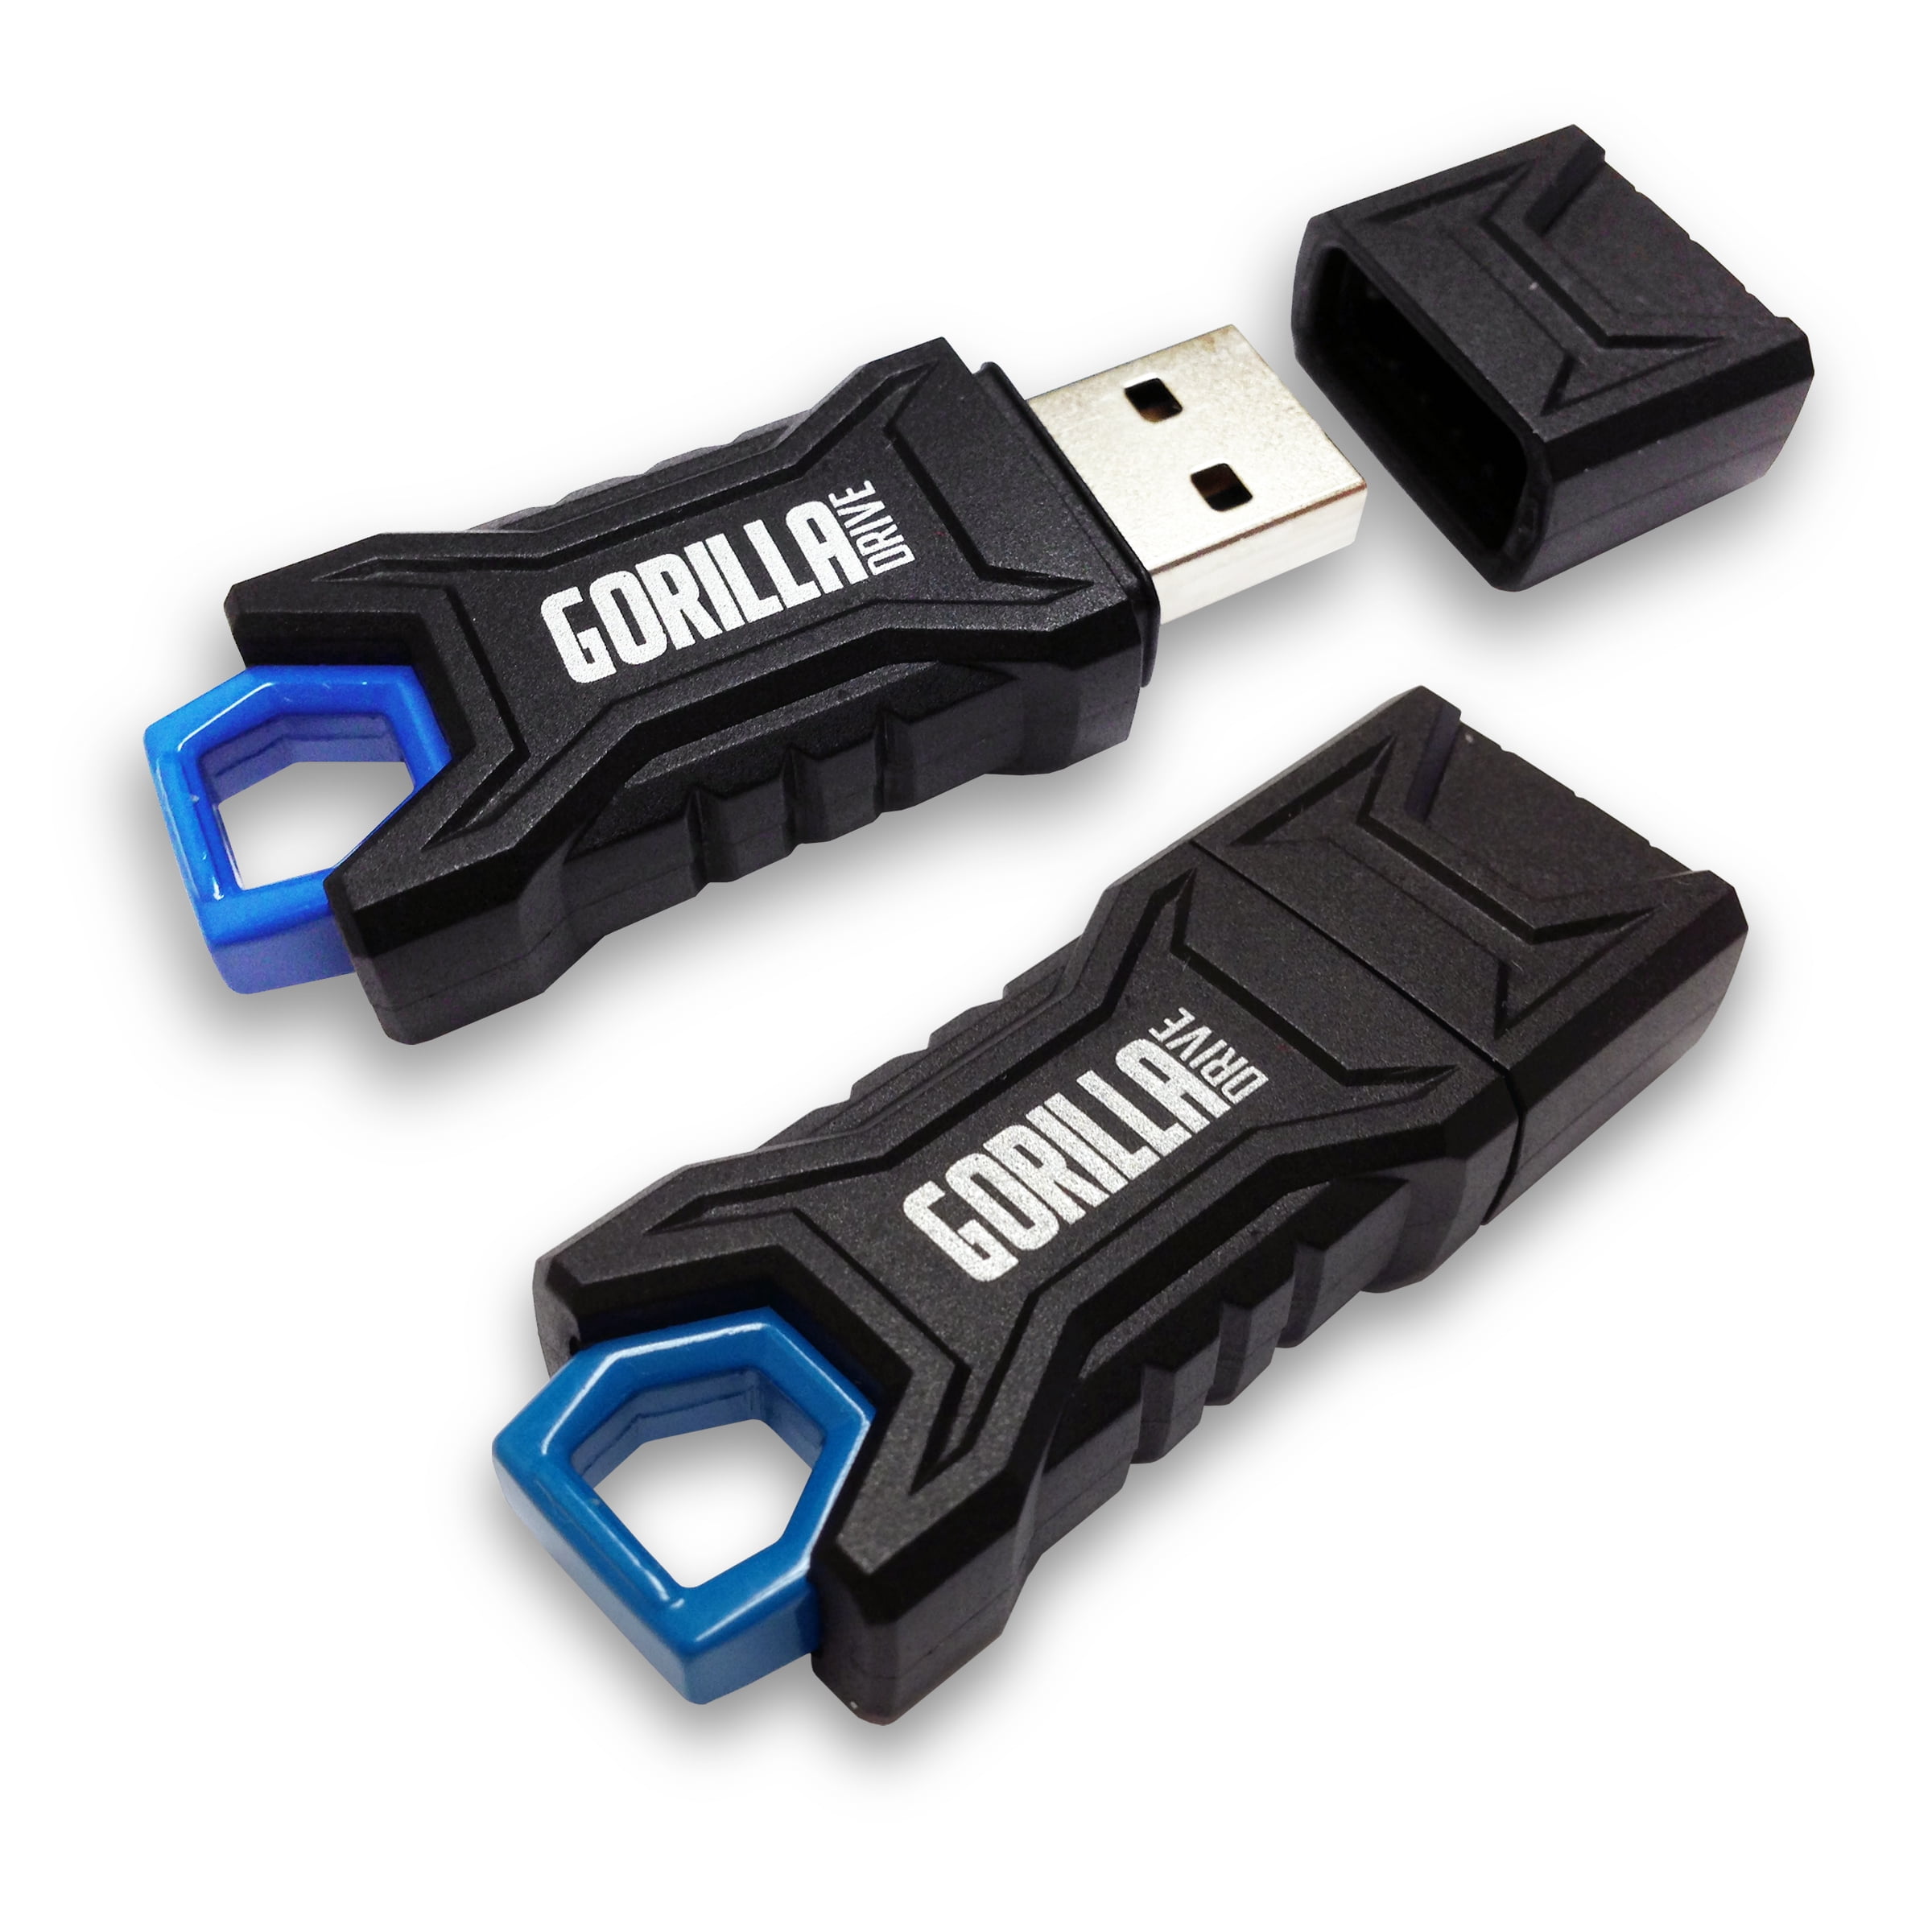 USB Flash Drive 32gb. Samsung Flash Drive. USB Flash Drive Repair Tool. Rapid Metal USB Flash Drive ezashy. Память usb купить